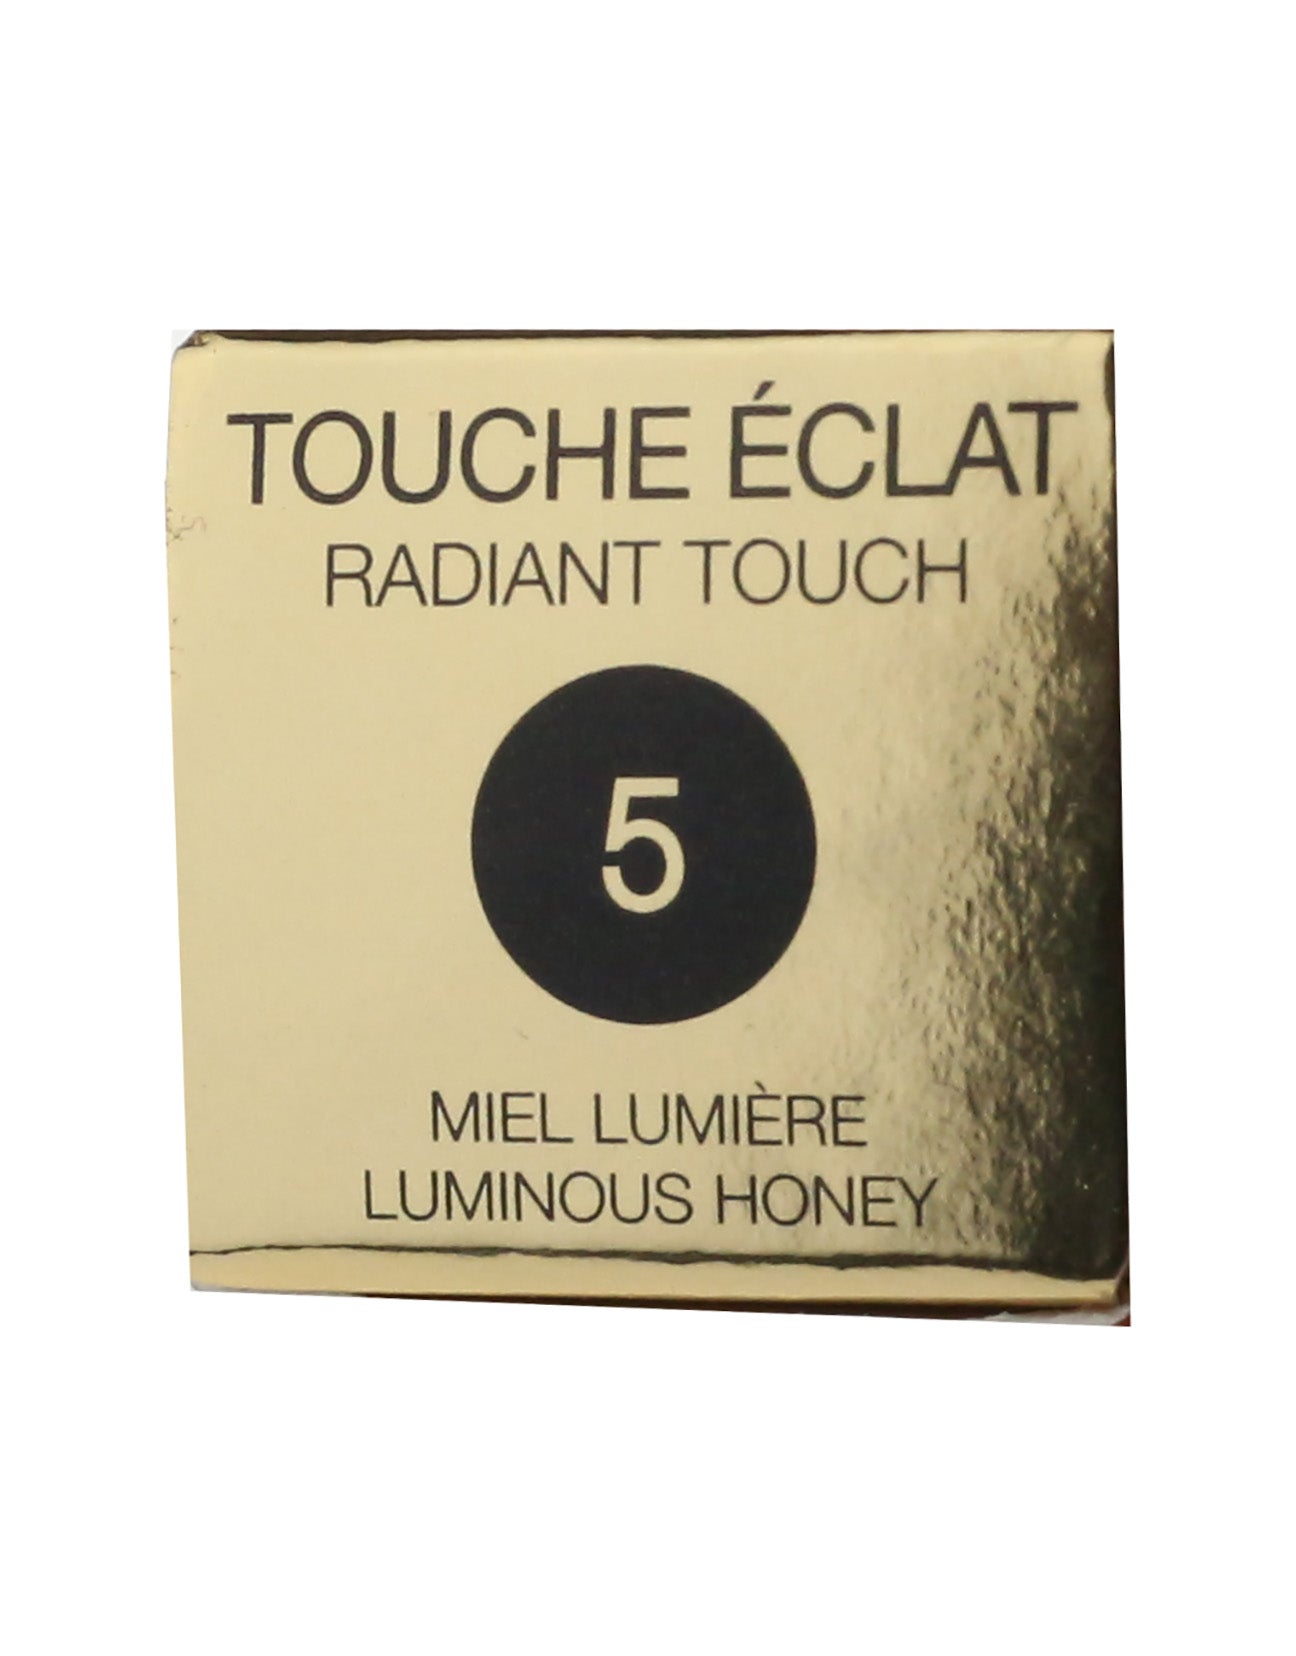 Yves Saint Laurent Touche Eclat .08 oz/ 2.5 ml In Box [CHECK THE DESCRIPTION]